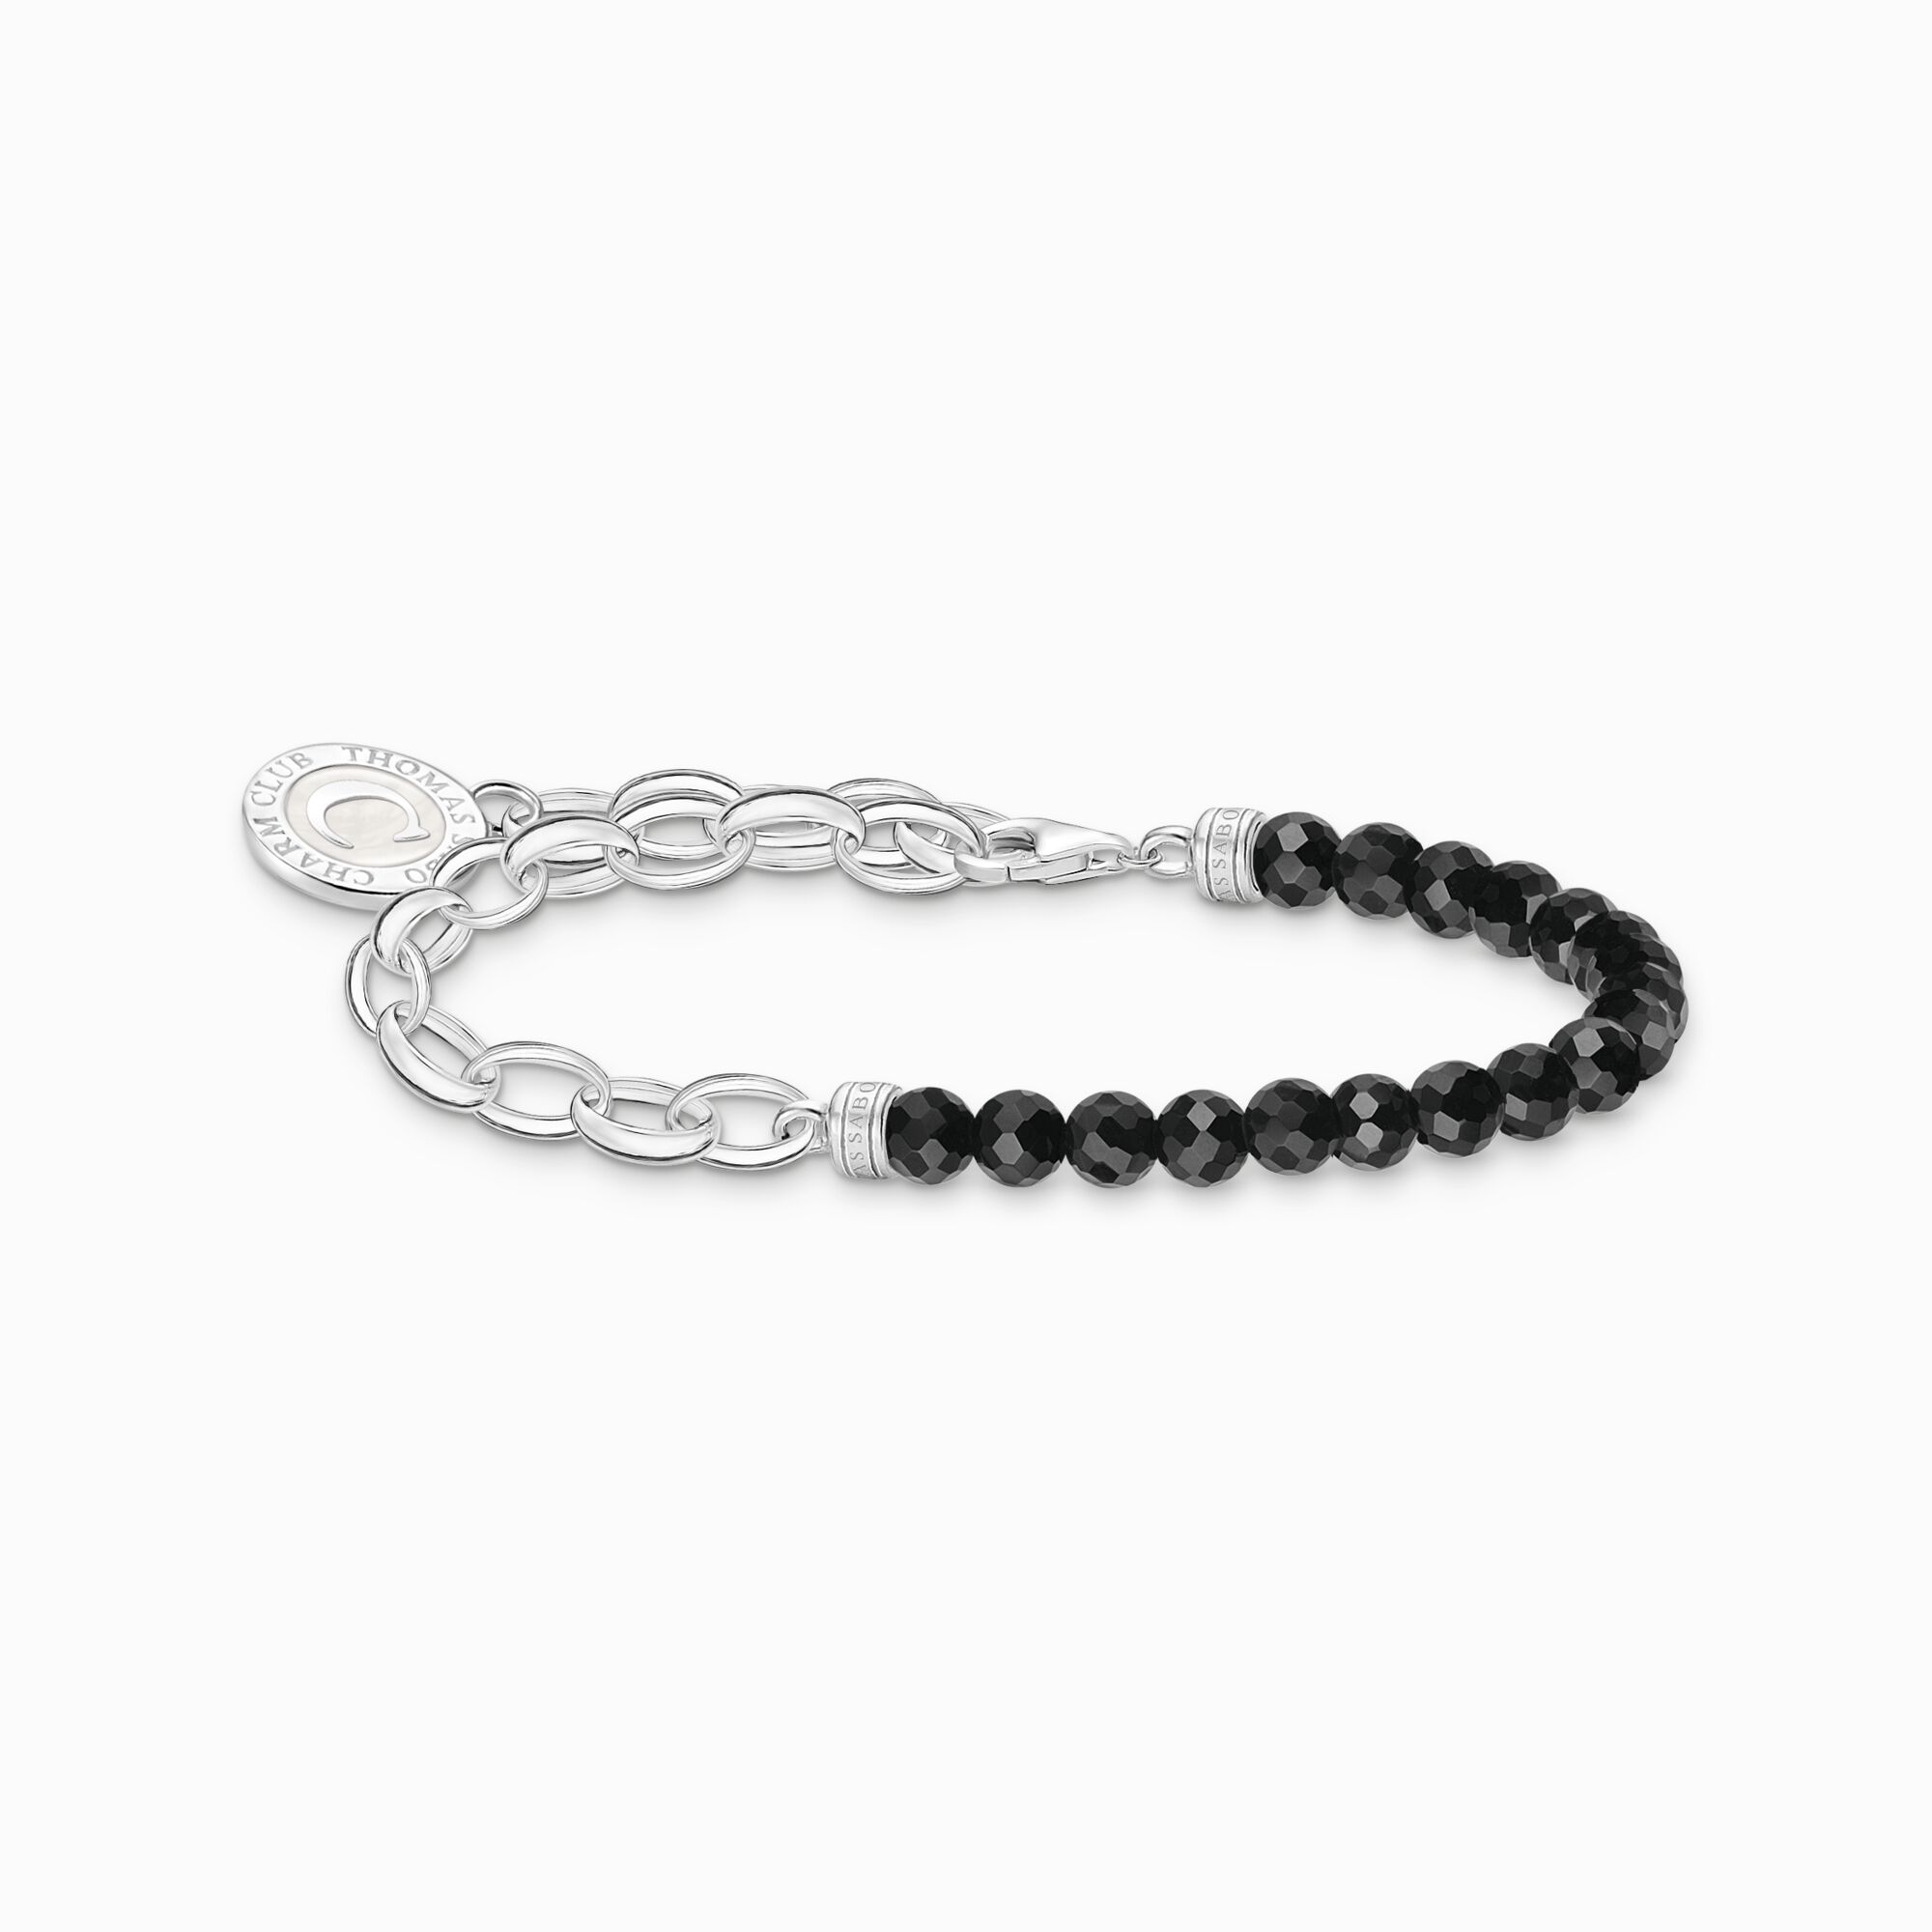 Miembro Pulsera Charm con negro beads de obsidiana y Charmista medalla plata de la colección Charm Club en la tienda online de THOMAS SABO